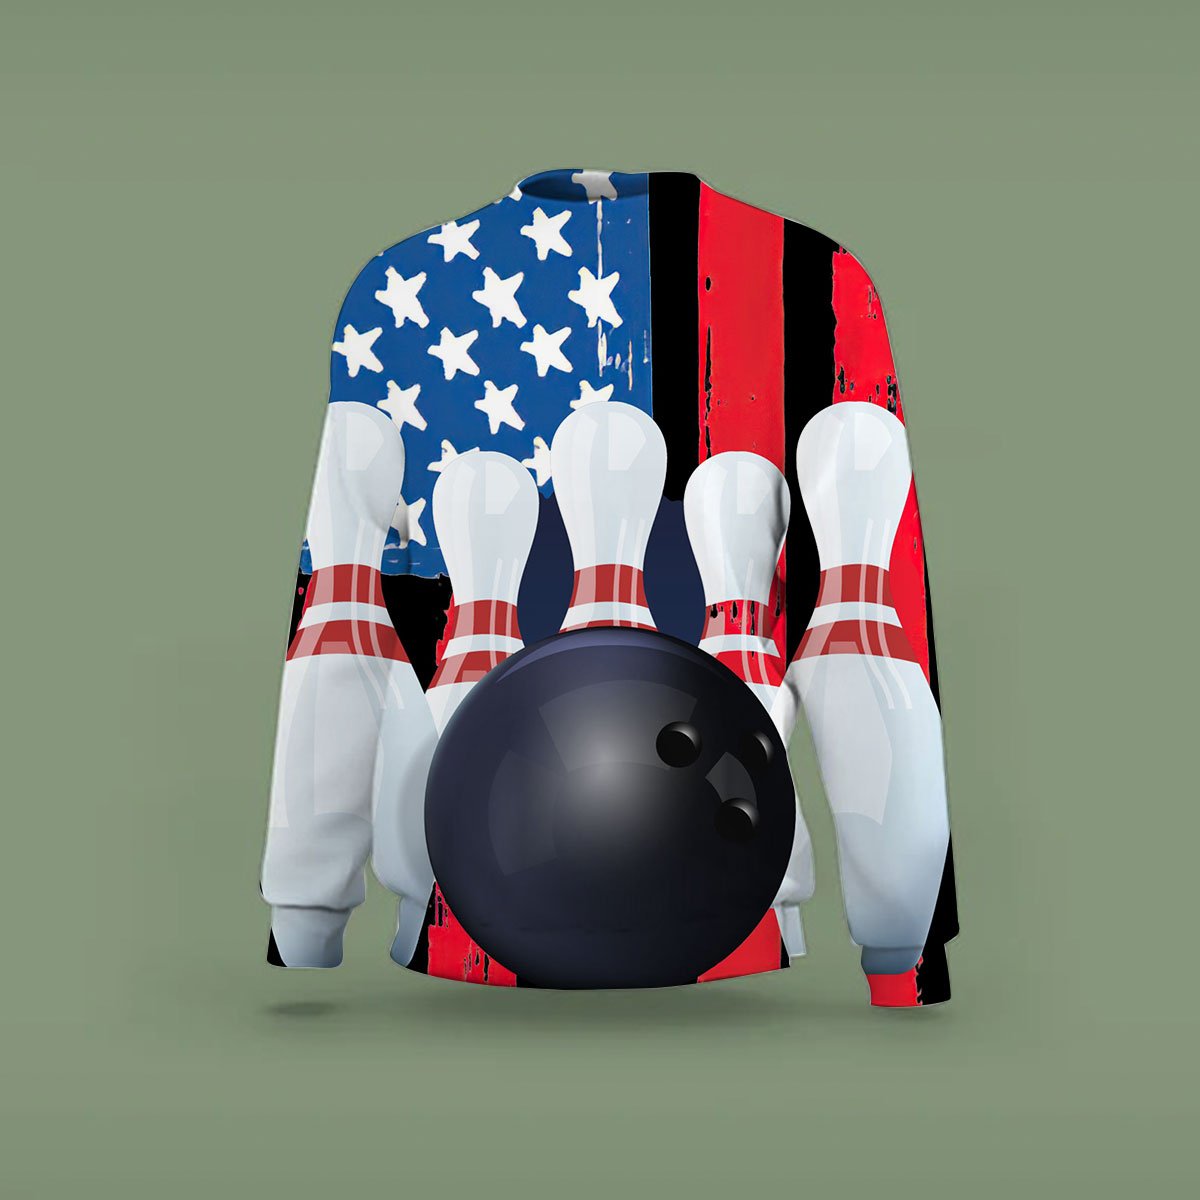 American Flag Bowling Sweatshirt